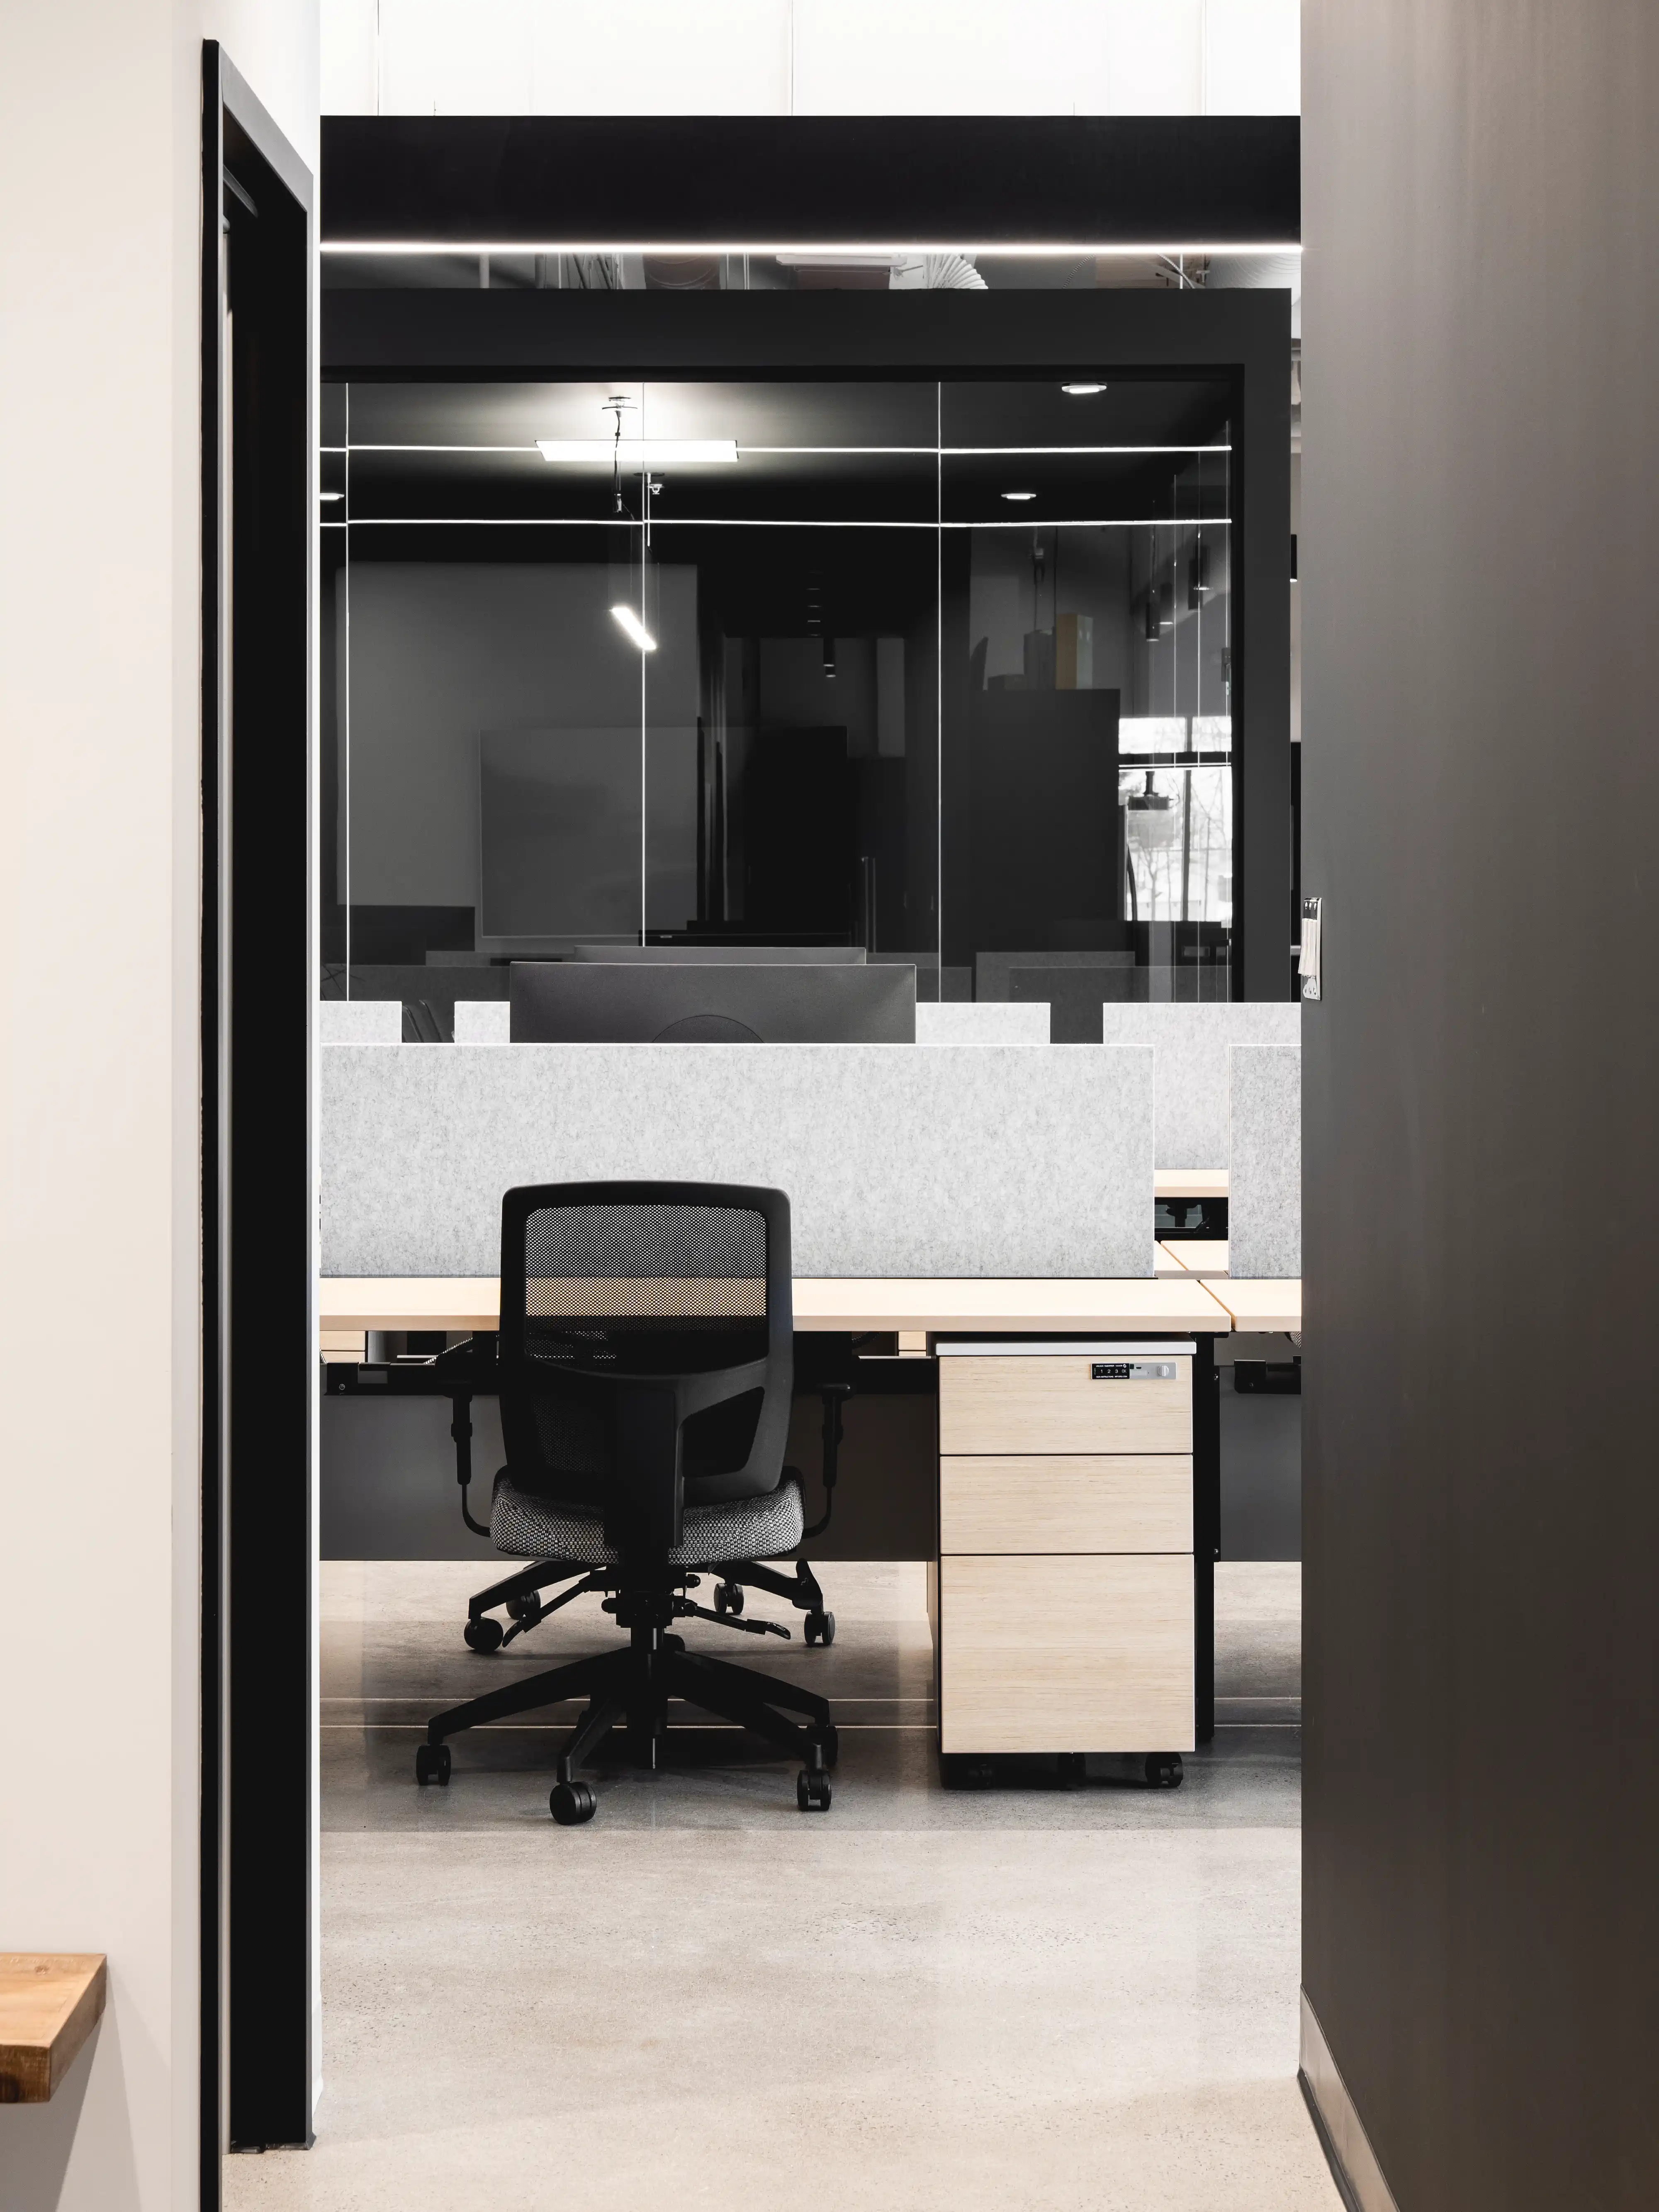 Un espace de bureau moderne avec des cubicules et une chaise de bureau noire devant un bureau en bois, intérieur signé Sarah Brown Design